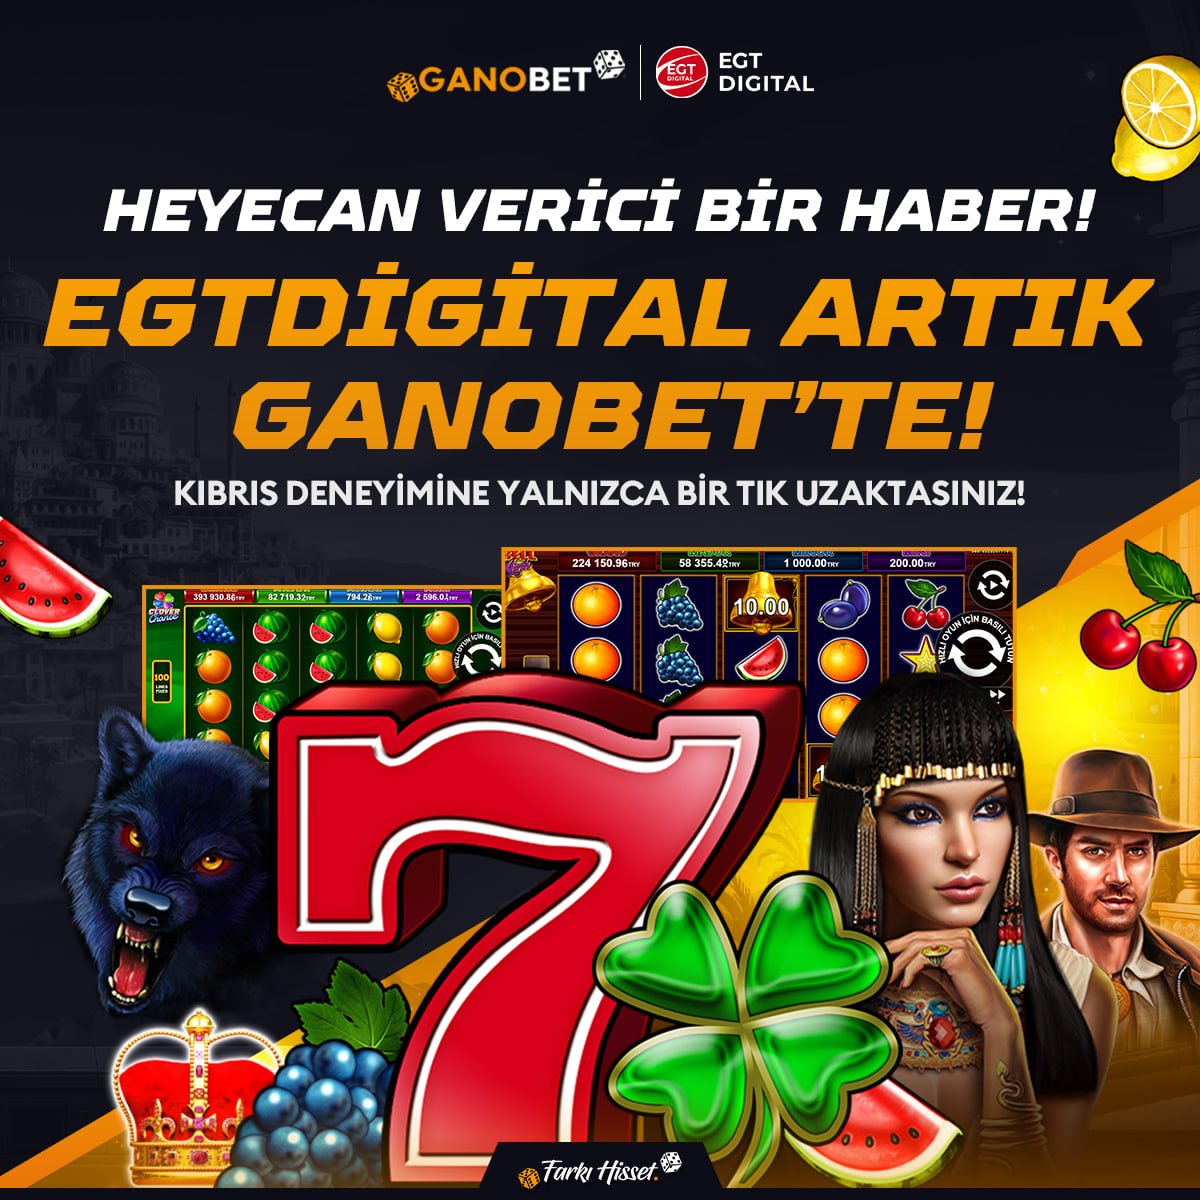 💎Beklenen Sağlayıcı EGTDigital Geldi!

🎰 Çok Özel Bir Casino Deneyimi Sizleri Bekliyor!

🤑Yeni Oyunlar Yepyeni Kazançlar!

FARKI HİSSET

#egt #casino #casinogames